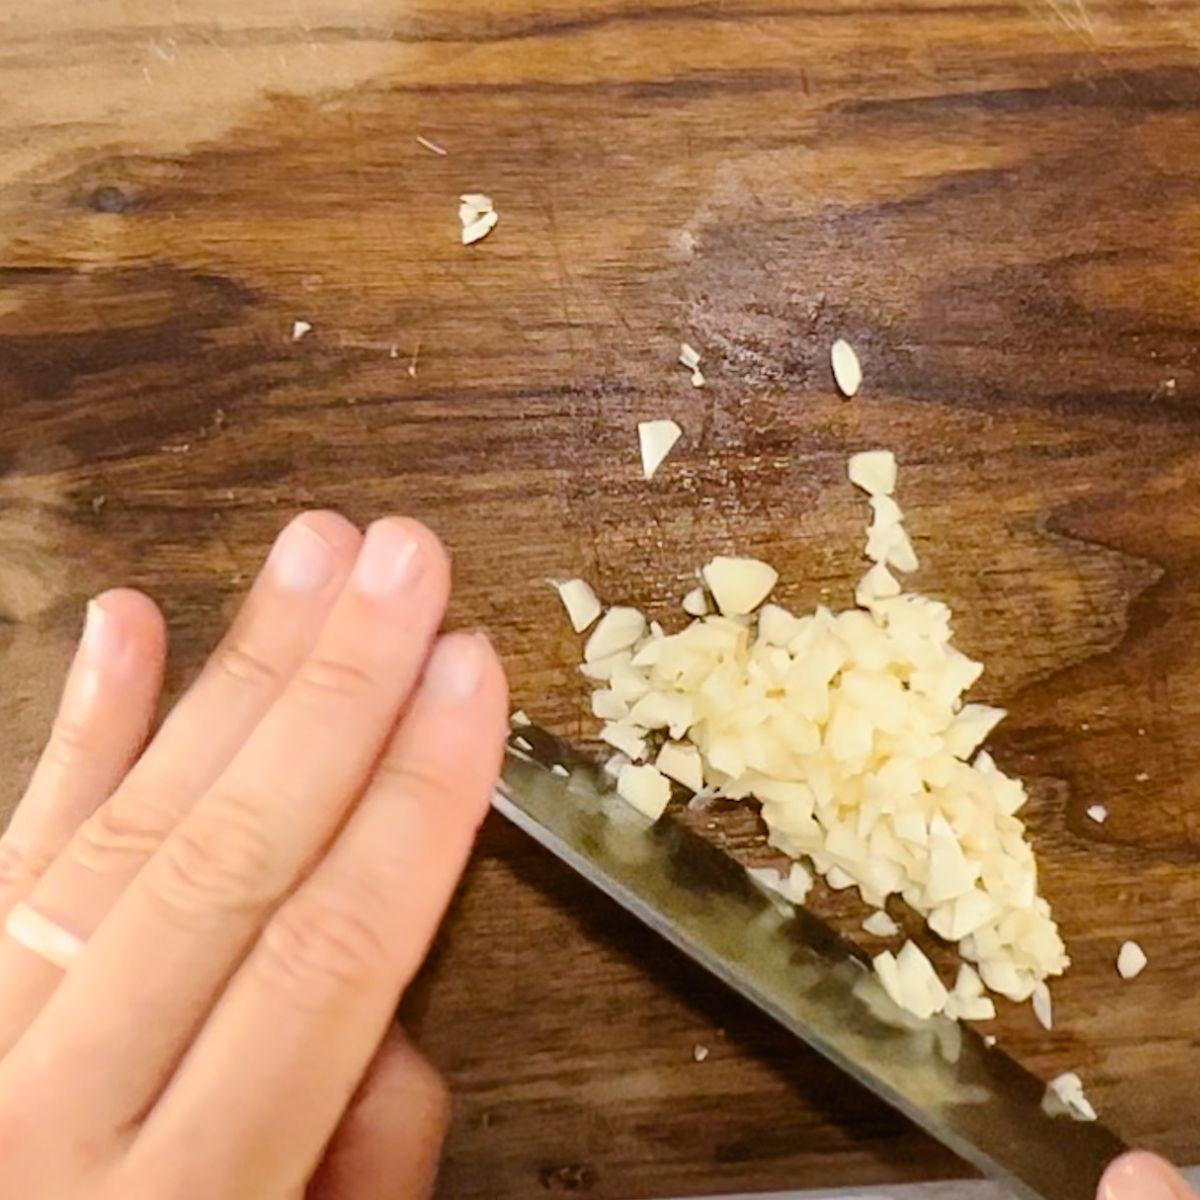 mincing garlic on a wooden cutting board.